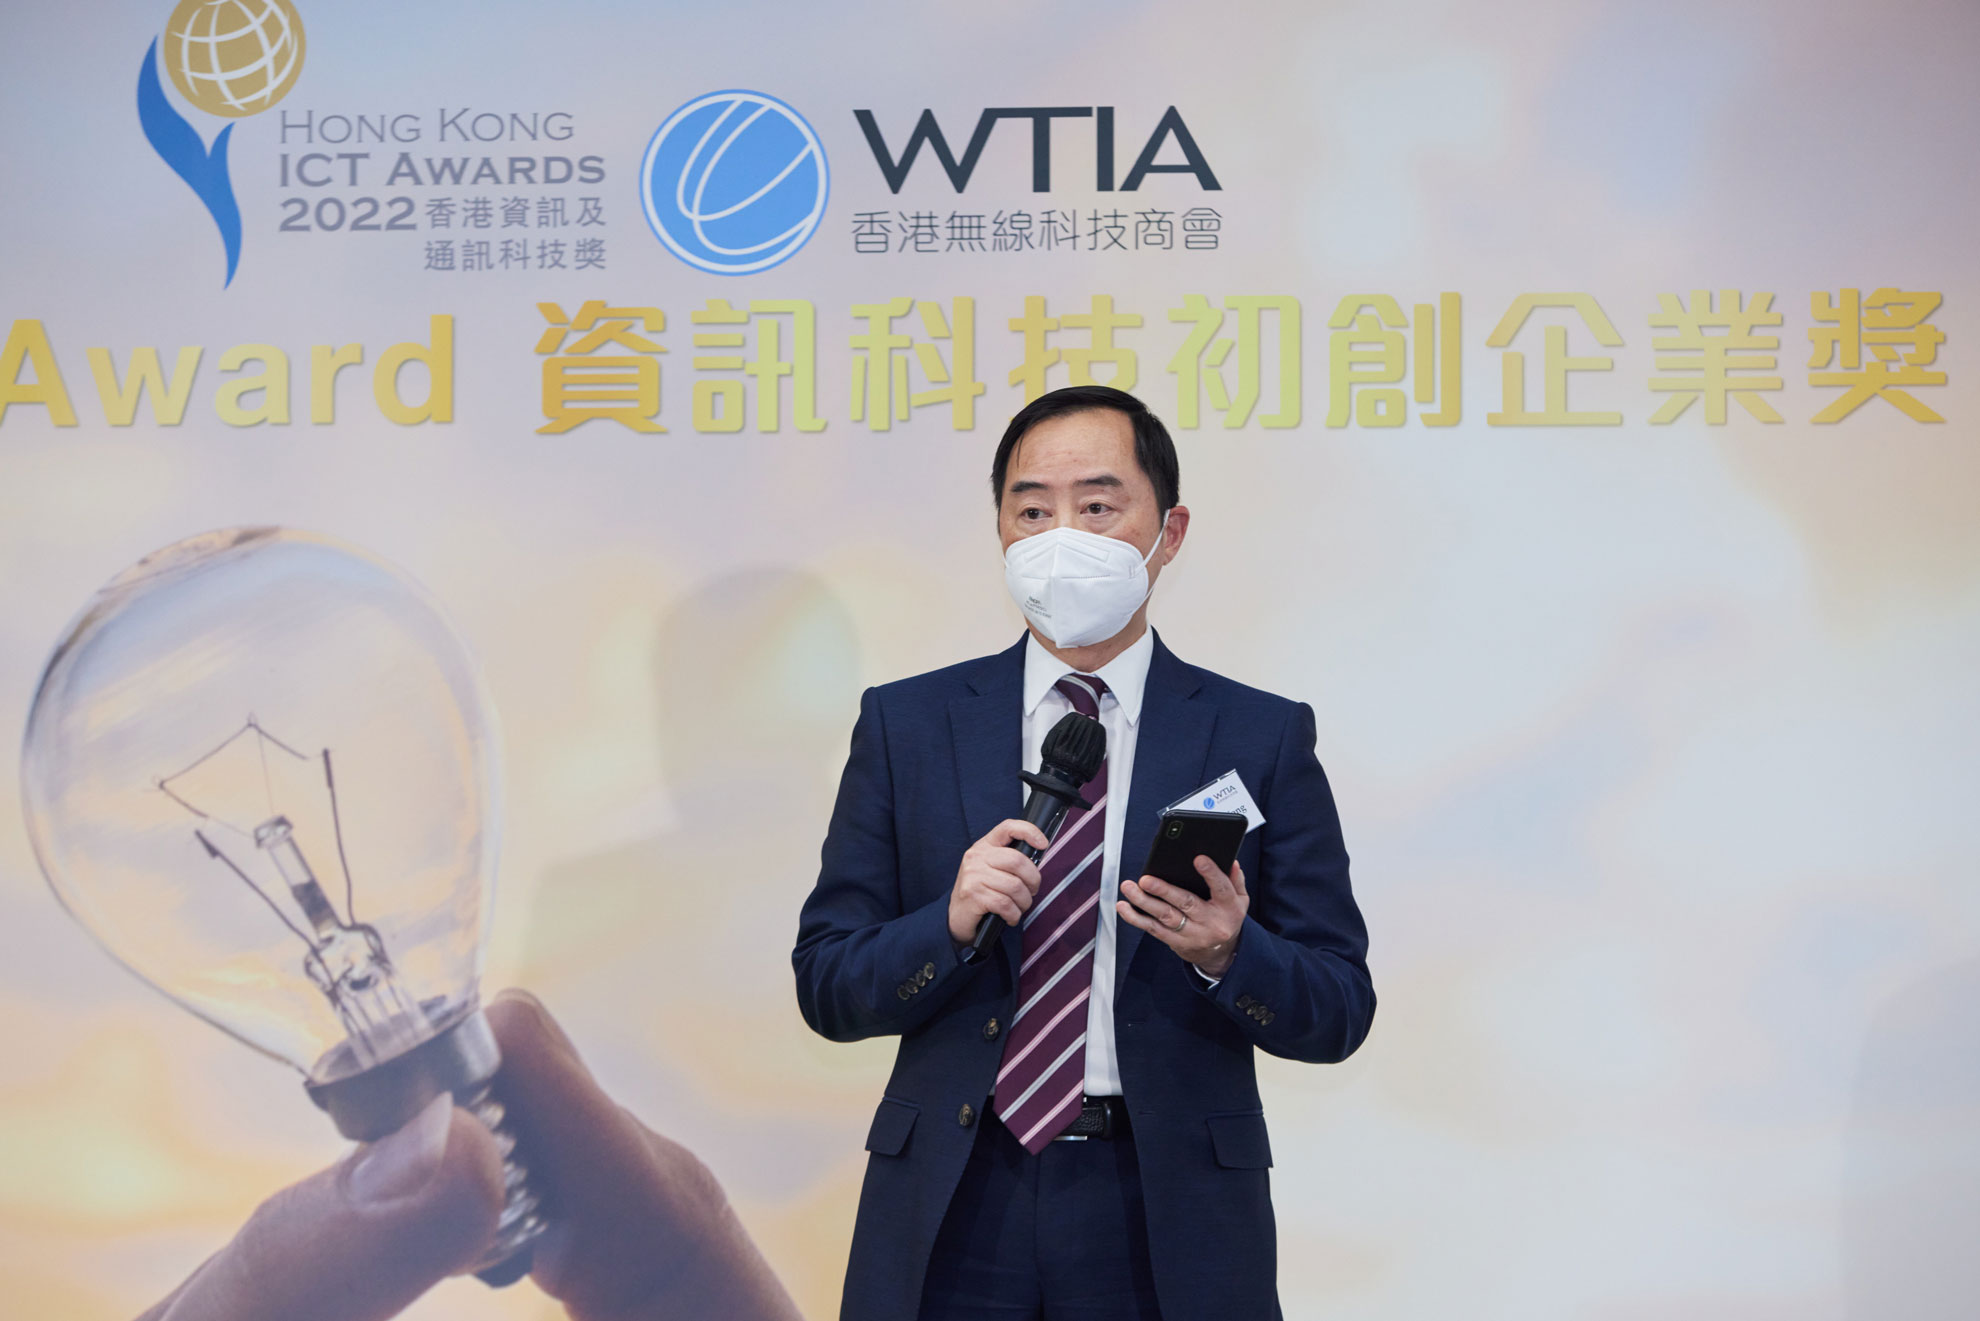 副政府資訊科技總監黃志光先生於「2022資訊科技初創企業獎簡介會 x 分享研討會」致辭。